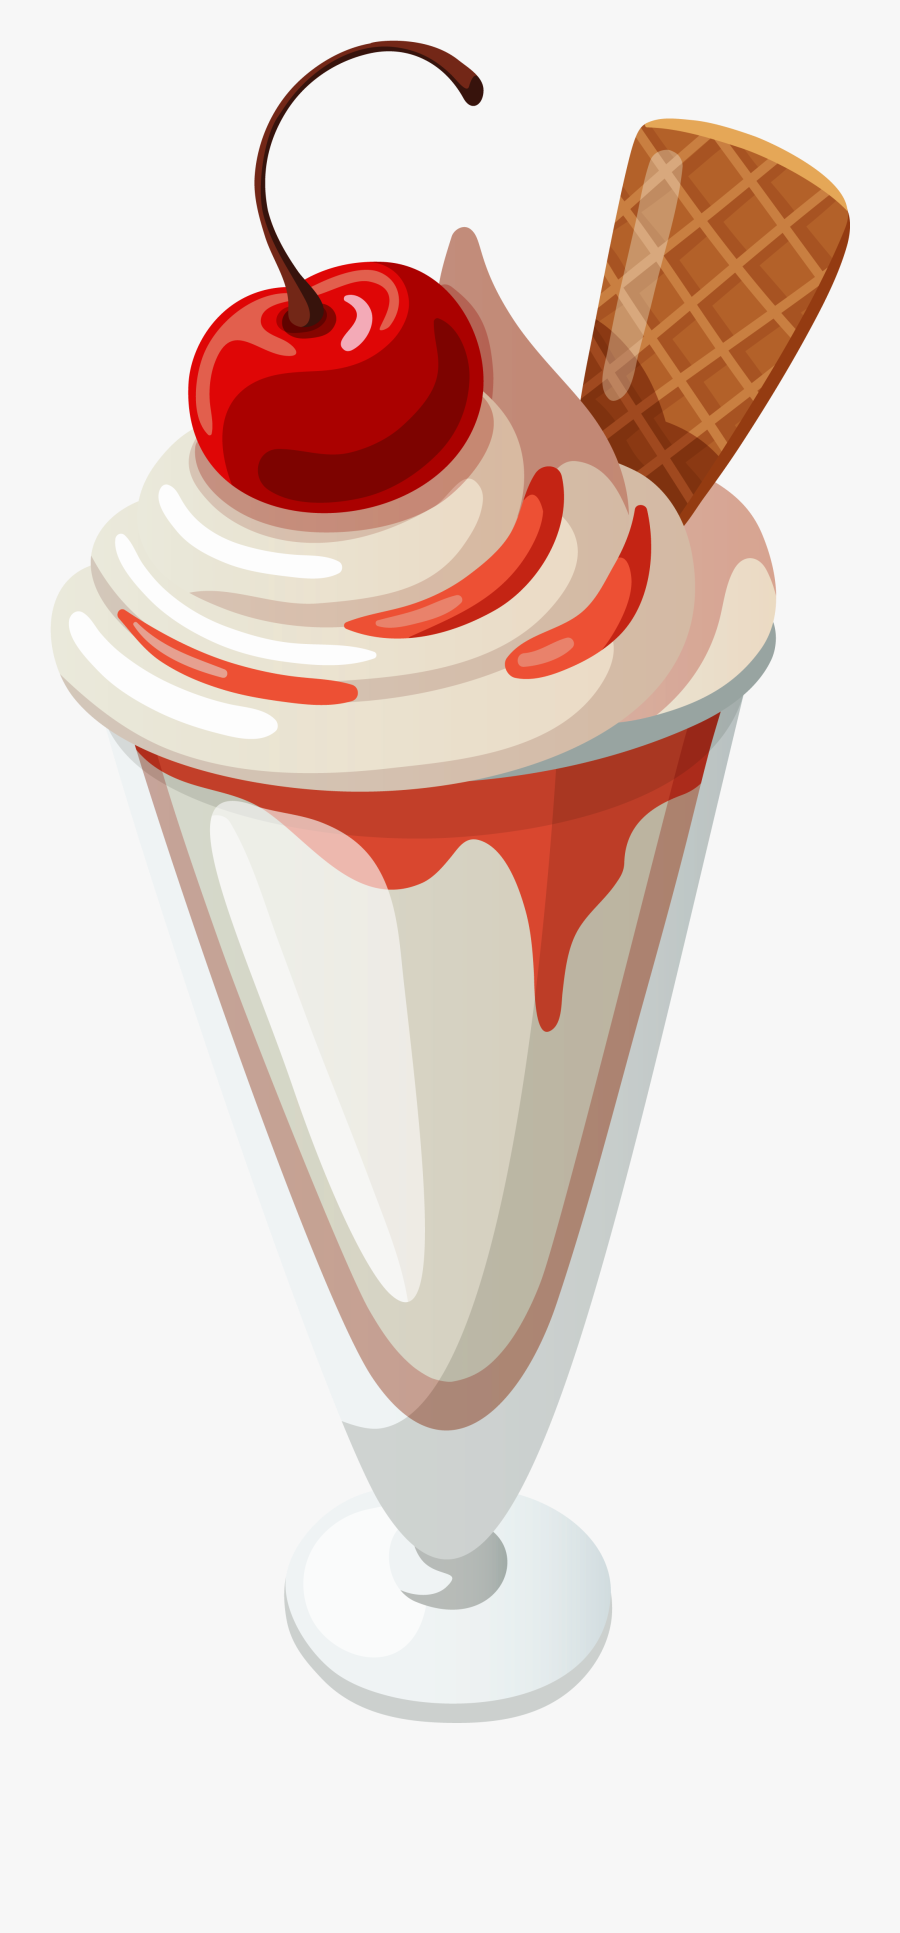 Transparent Vanilla Ice Cream Sundae Clipart - Animated Ice Cream Sundae, Transparent Clipart